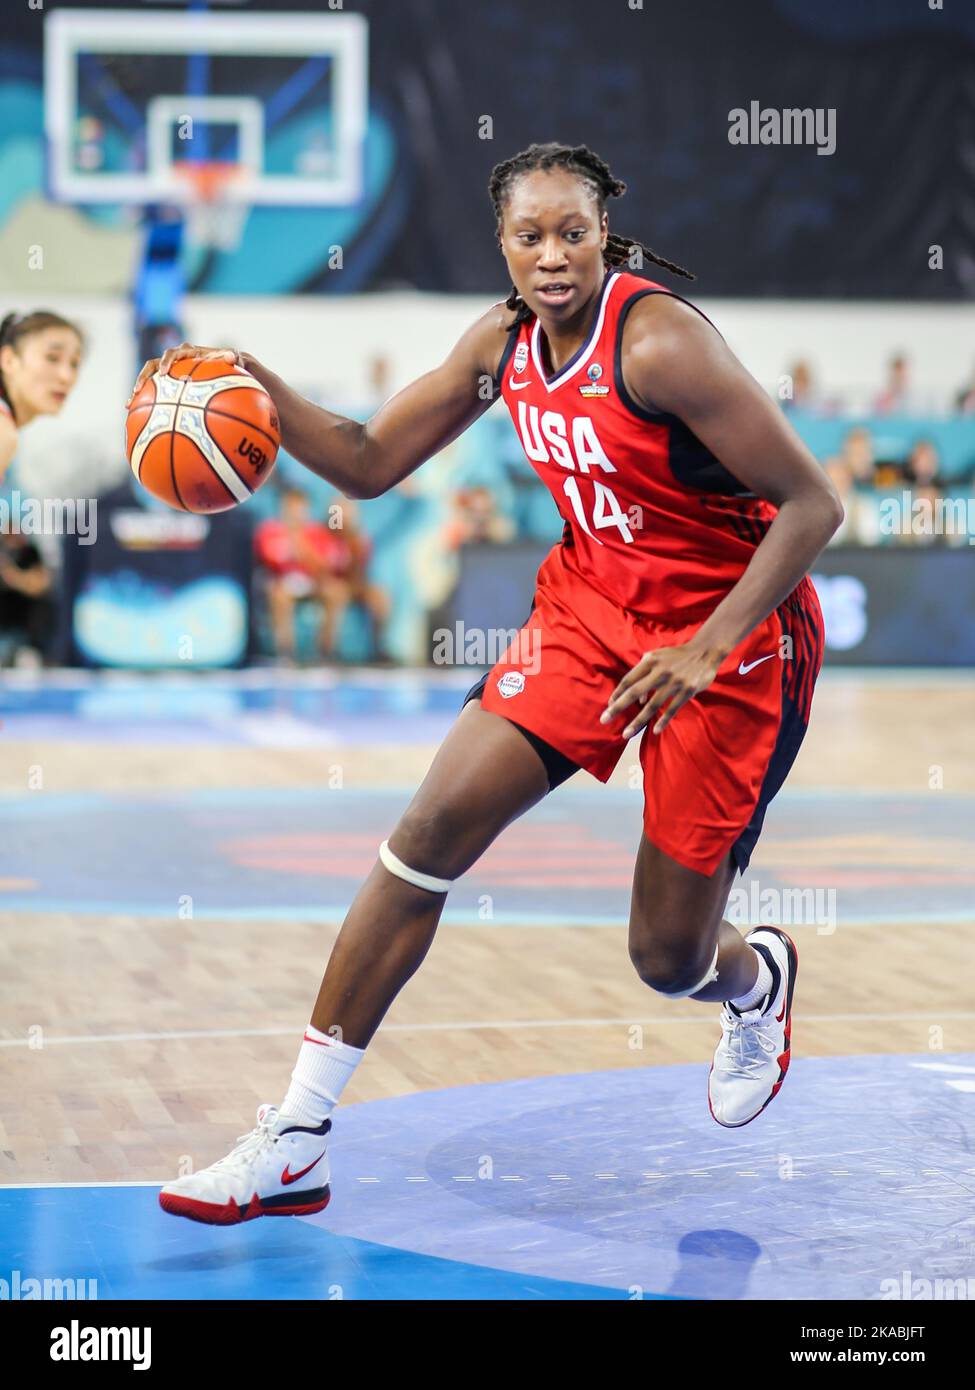 Espagne, Ténérife, 23 septembre 2018: Tina Charles, joueuse de basket-ball féminine, en action lors de la coupe du monde de basket-ball féminin de la FIBA Banque D'Images